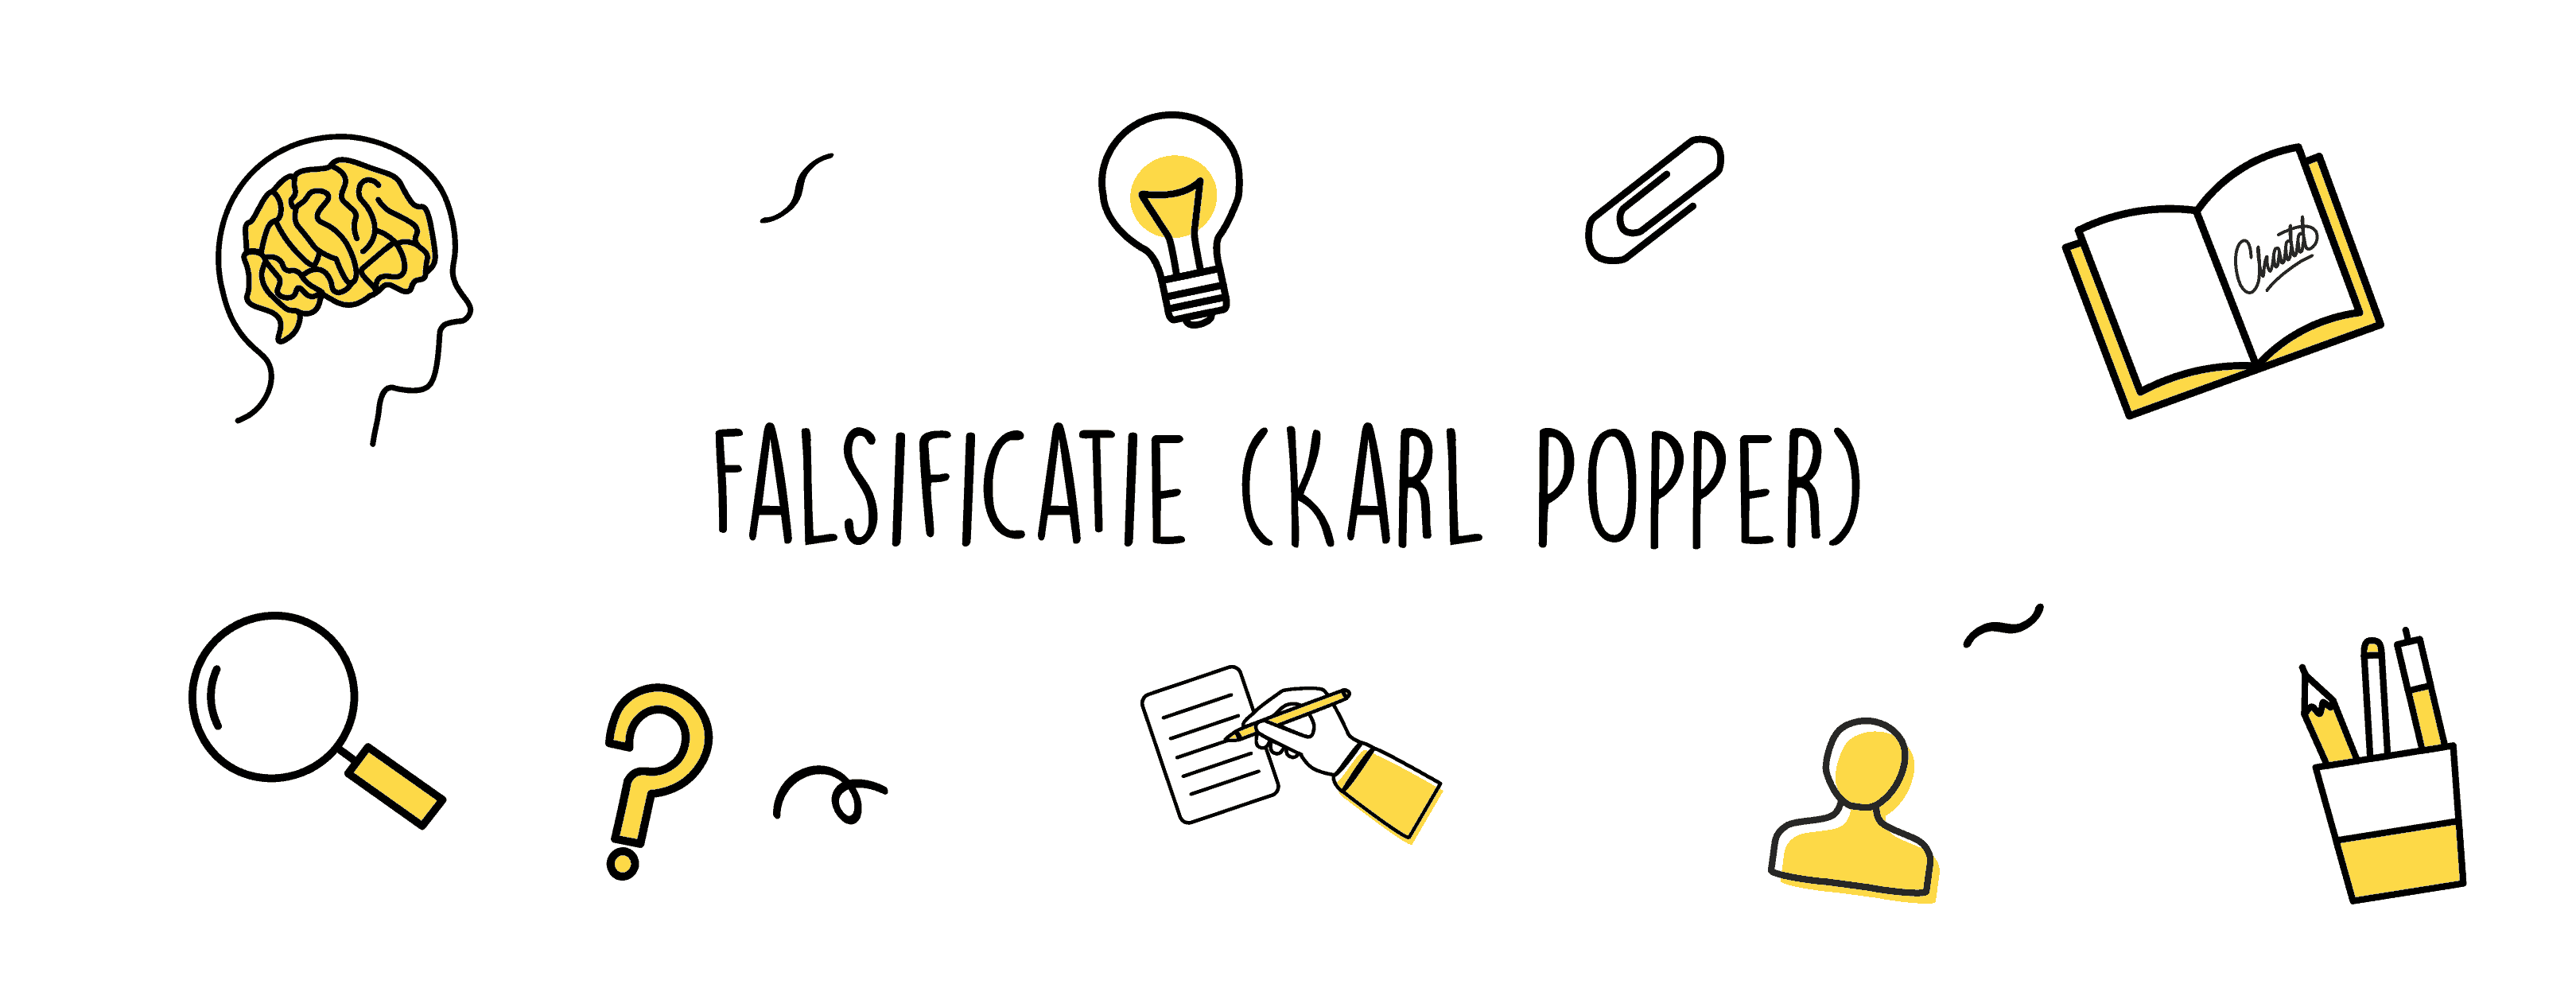 Falsificatie Karl Popper